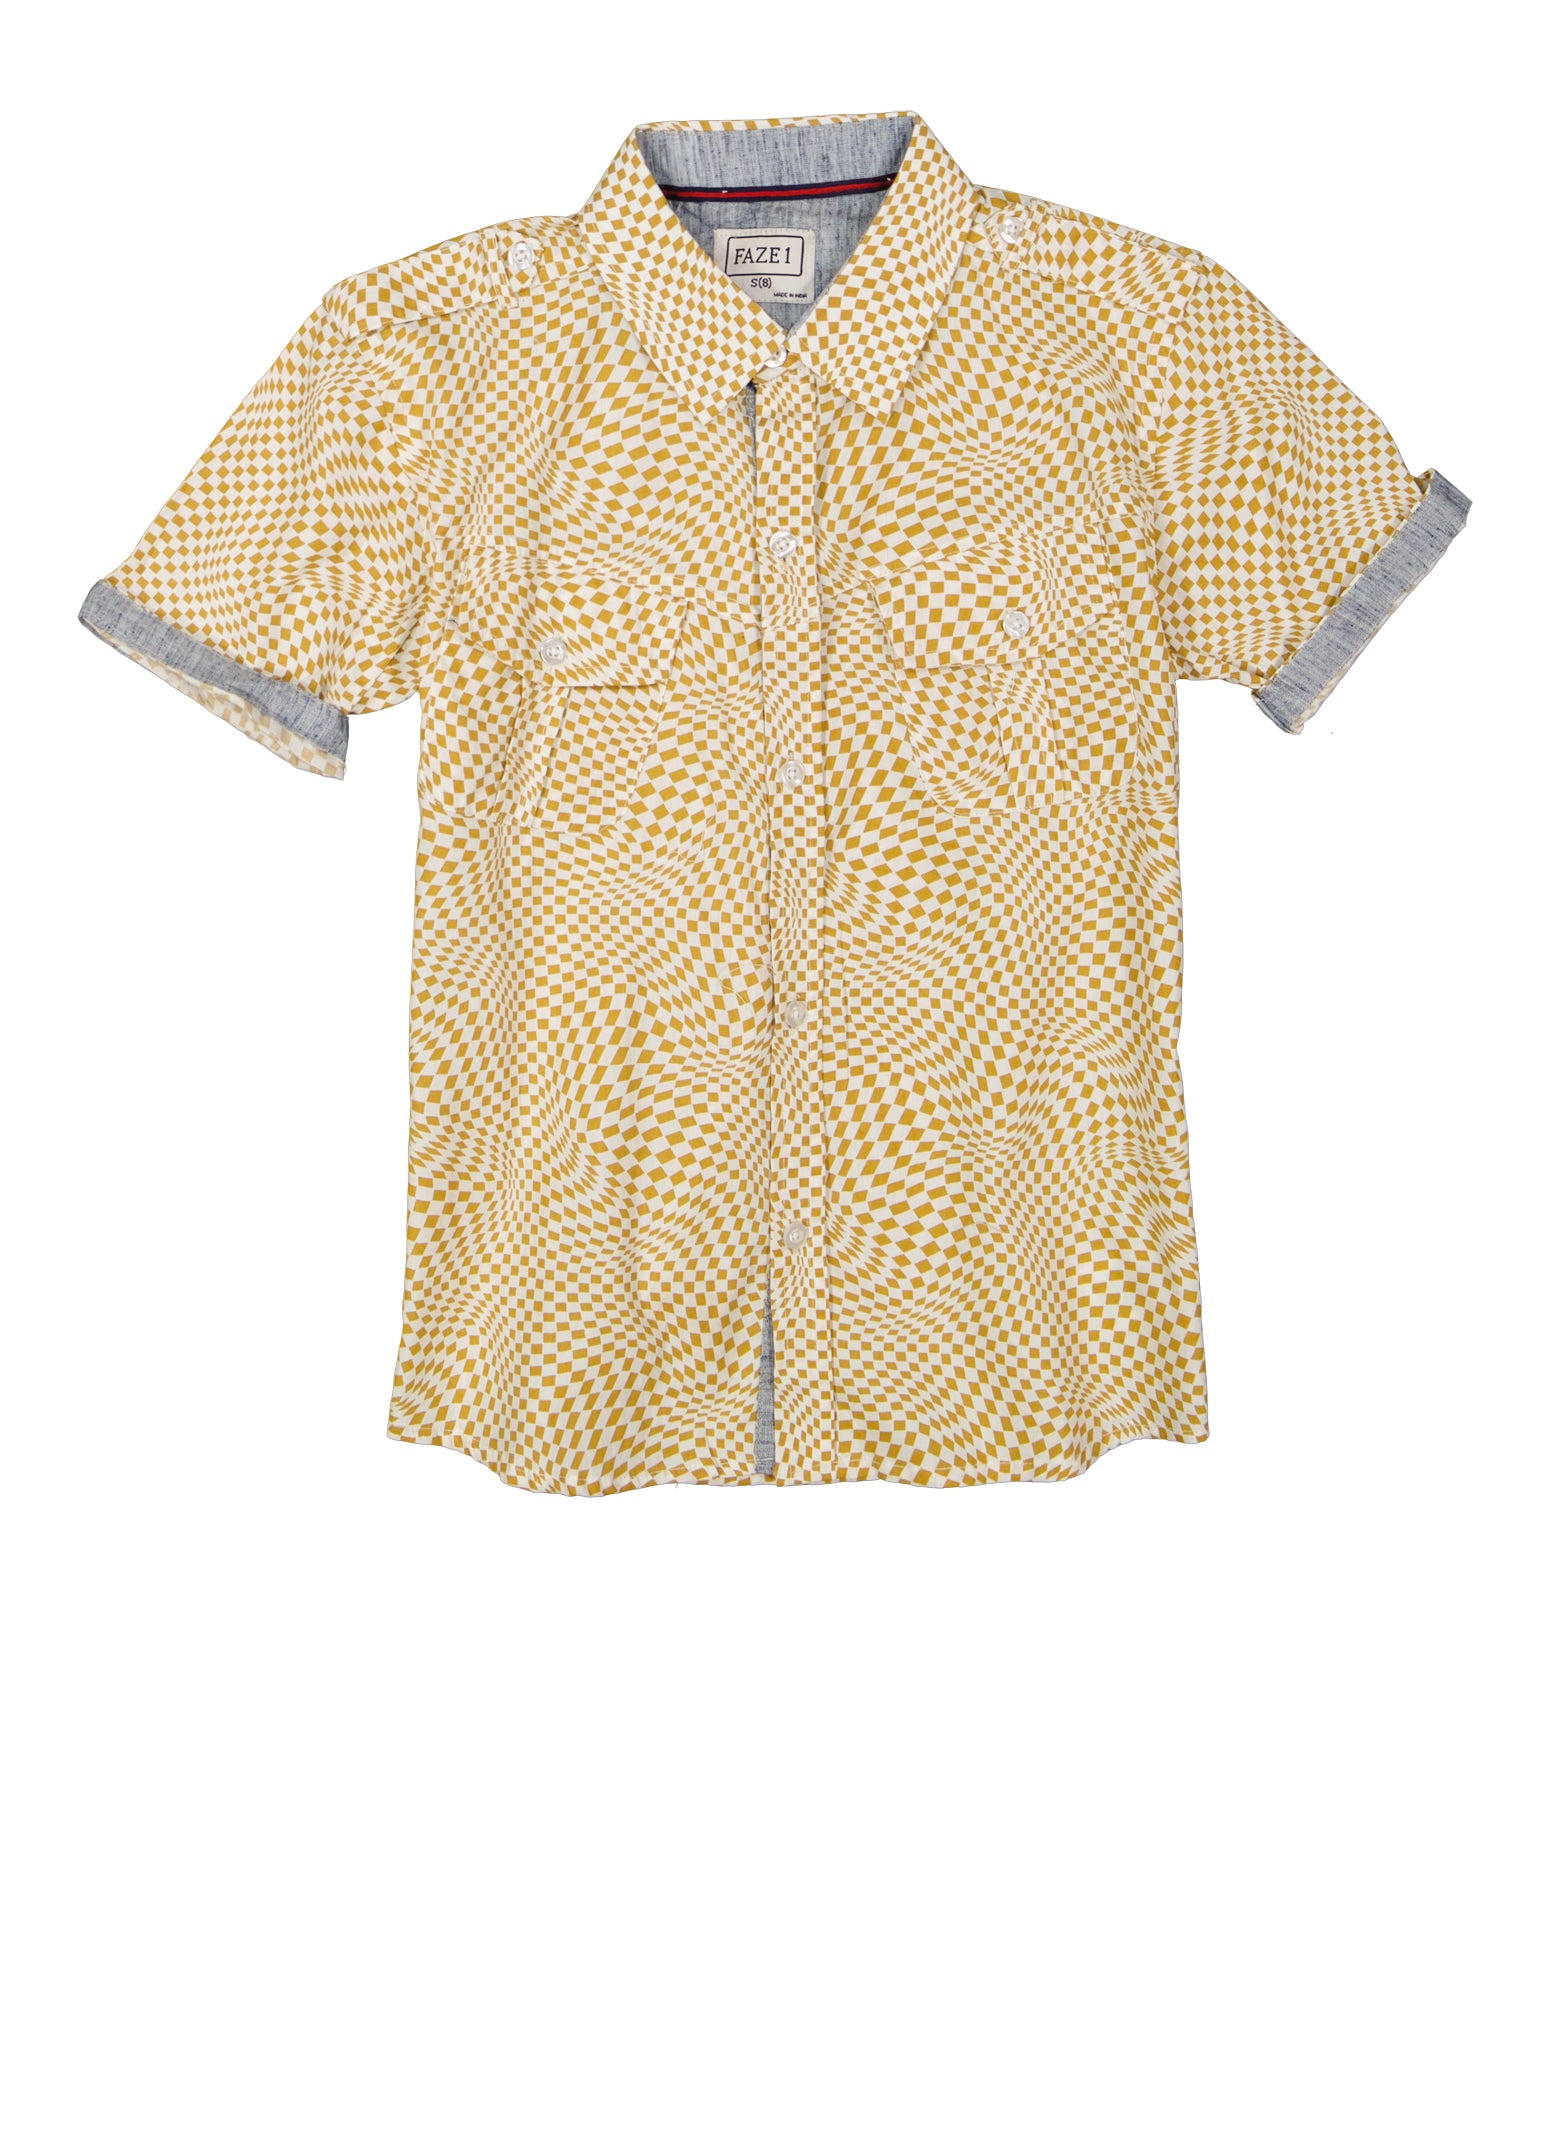 Boys Checkered Print Shirt